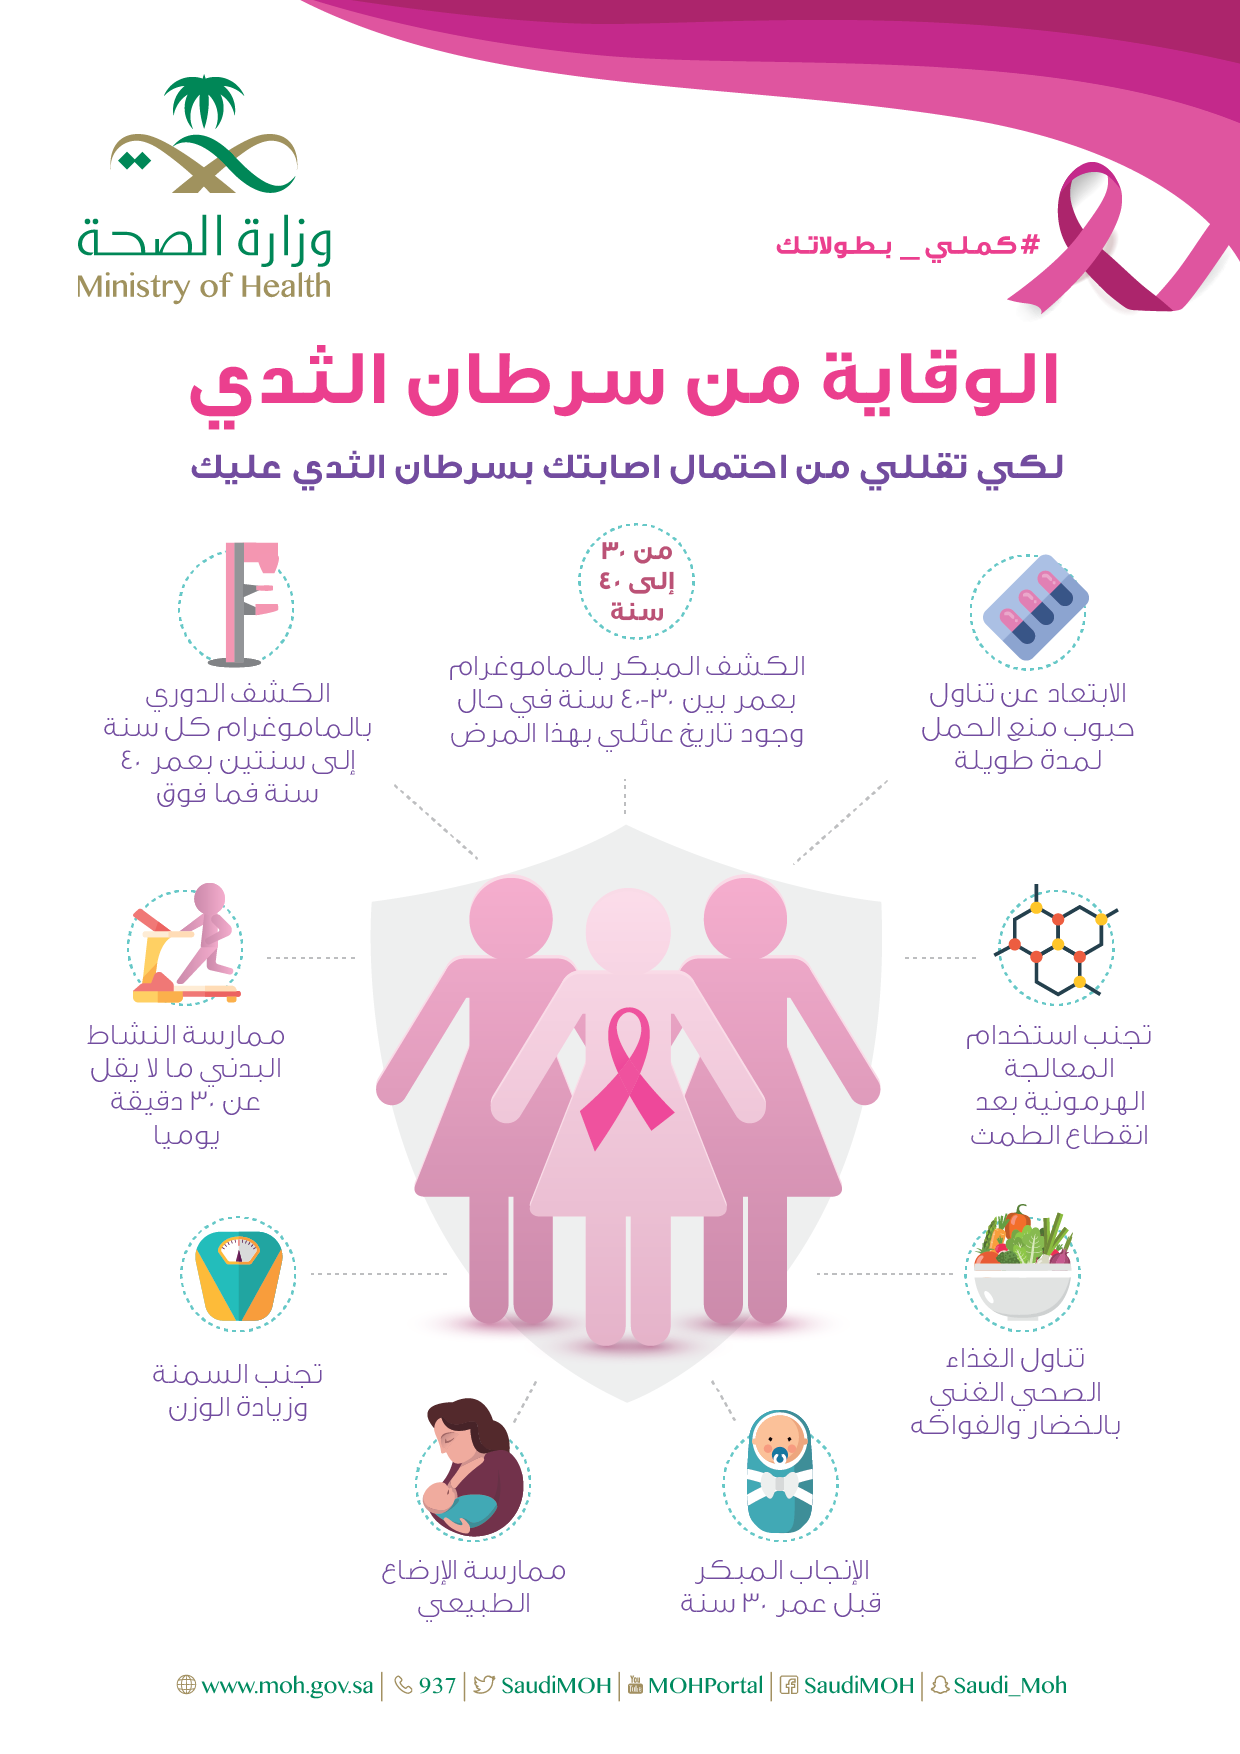 الكشف المبكر عن سرطان الثدي , اهميه الكشف المبكر لسرطان عبارات